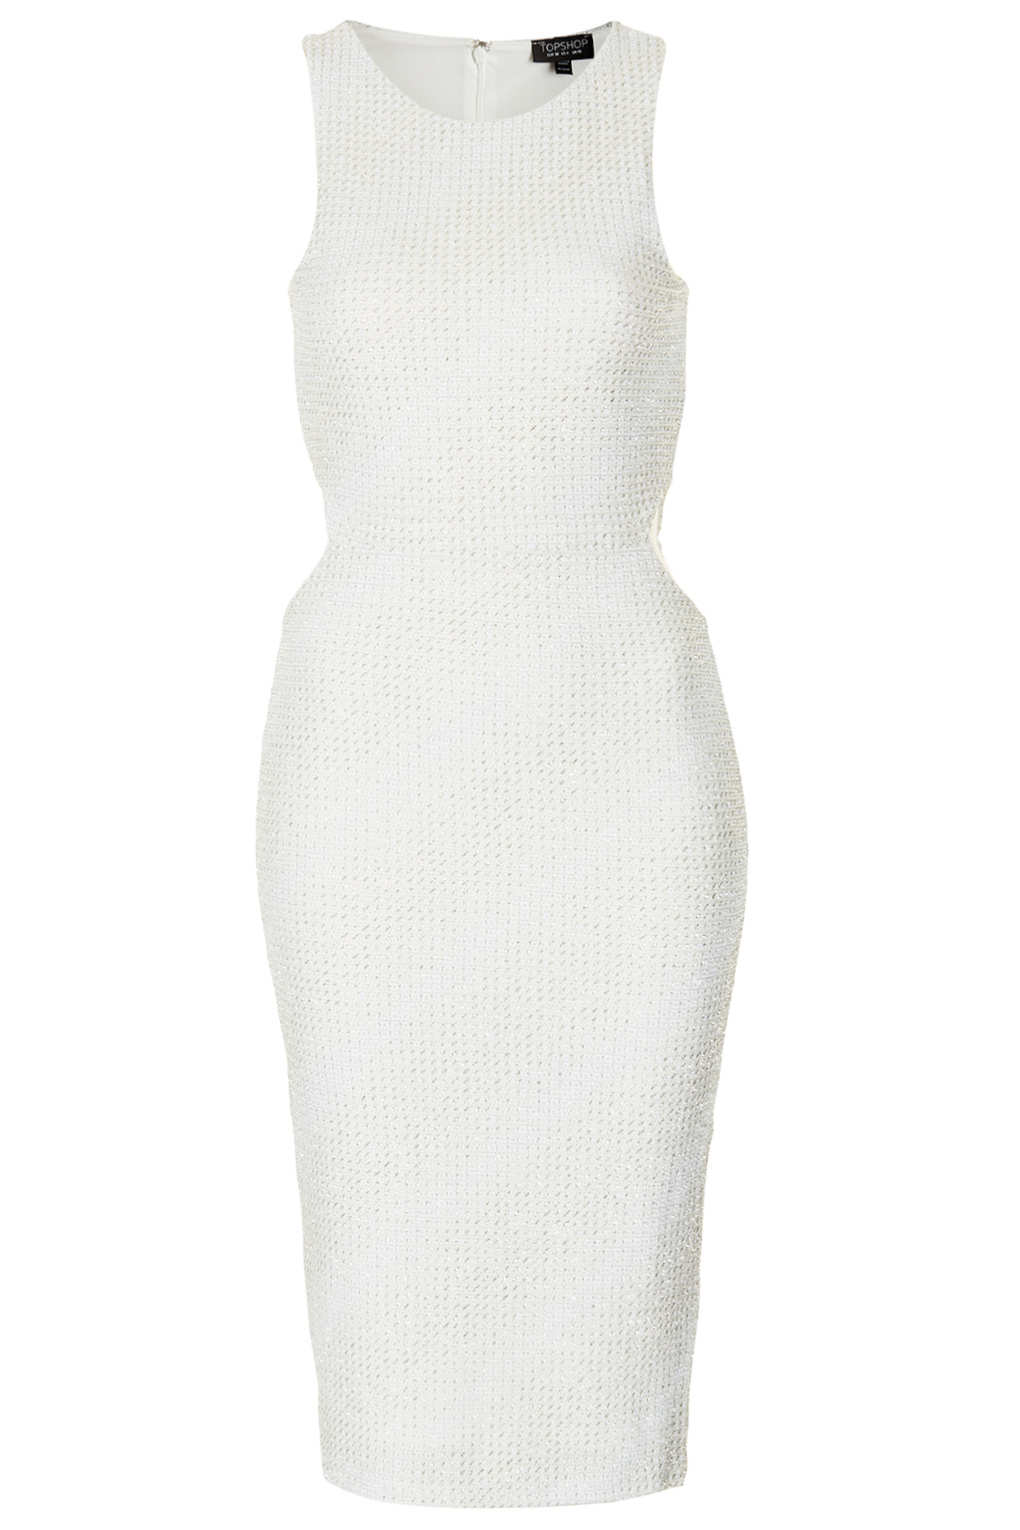 TOPSHOP Cutout Glitter Midi Bodycon Dress in White - Lyst